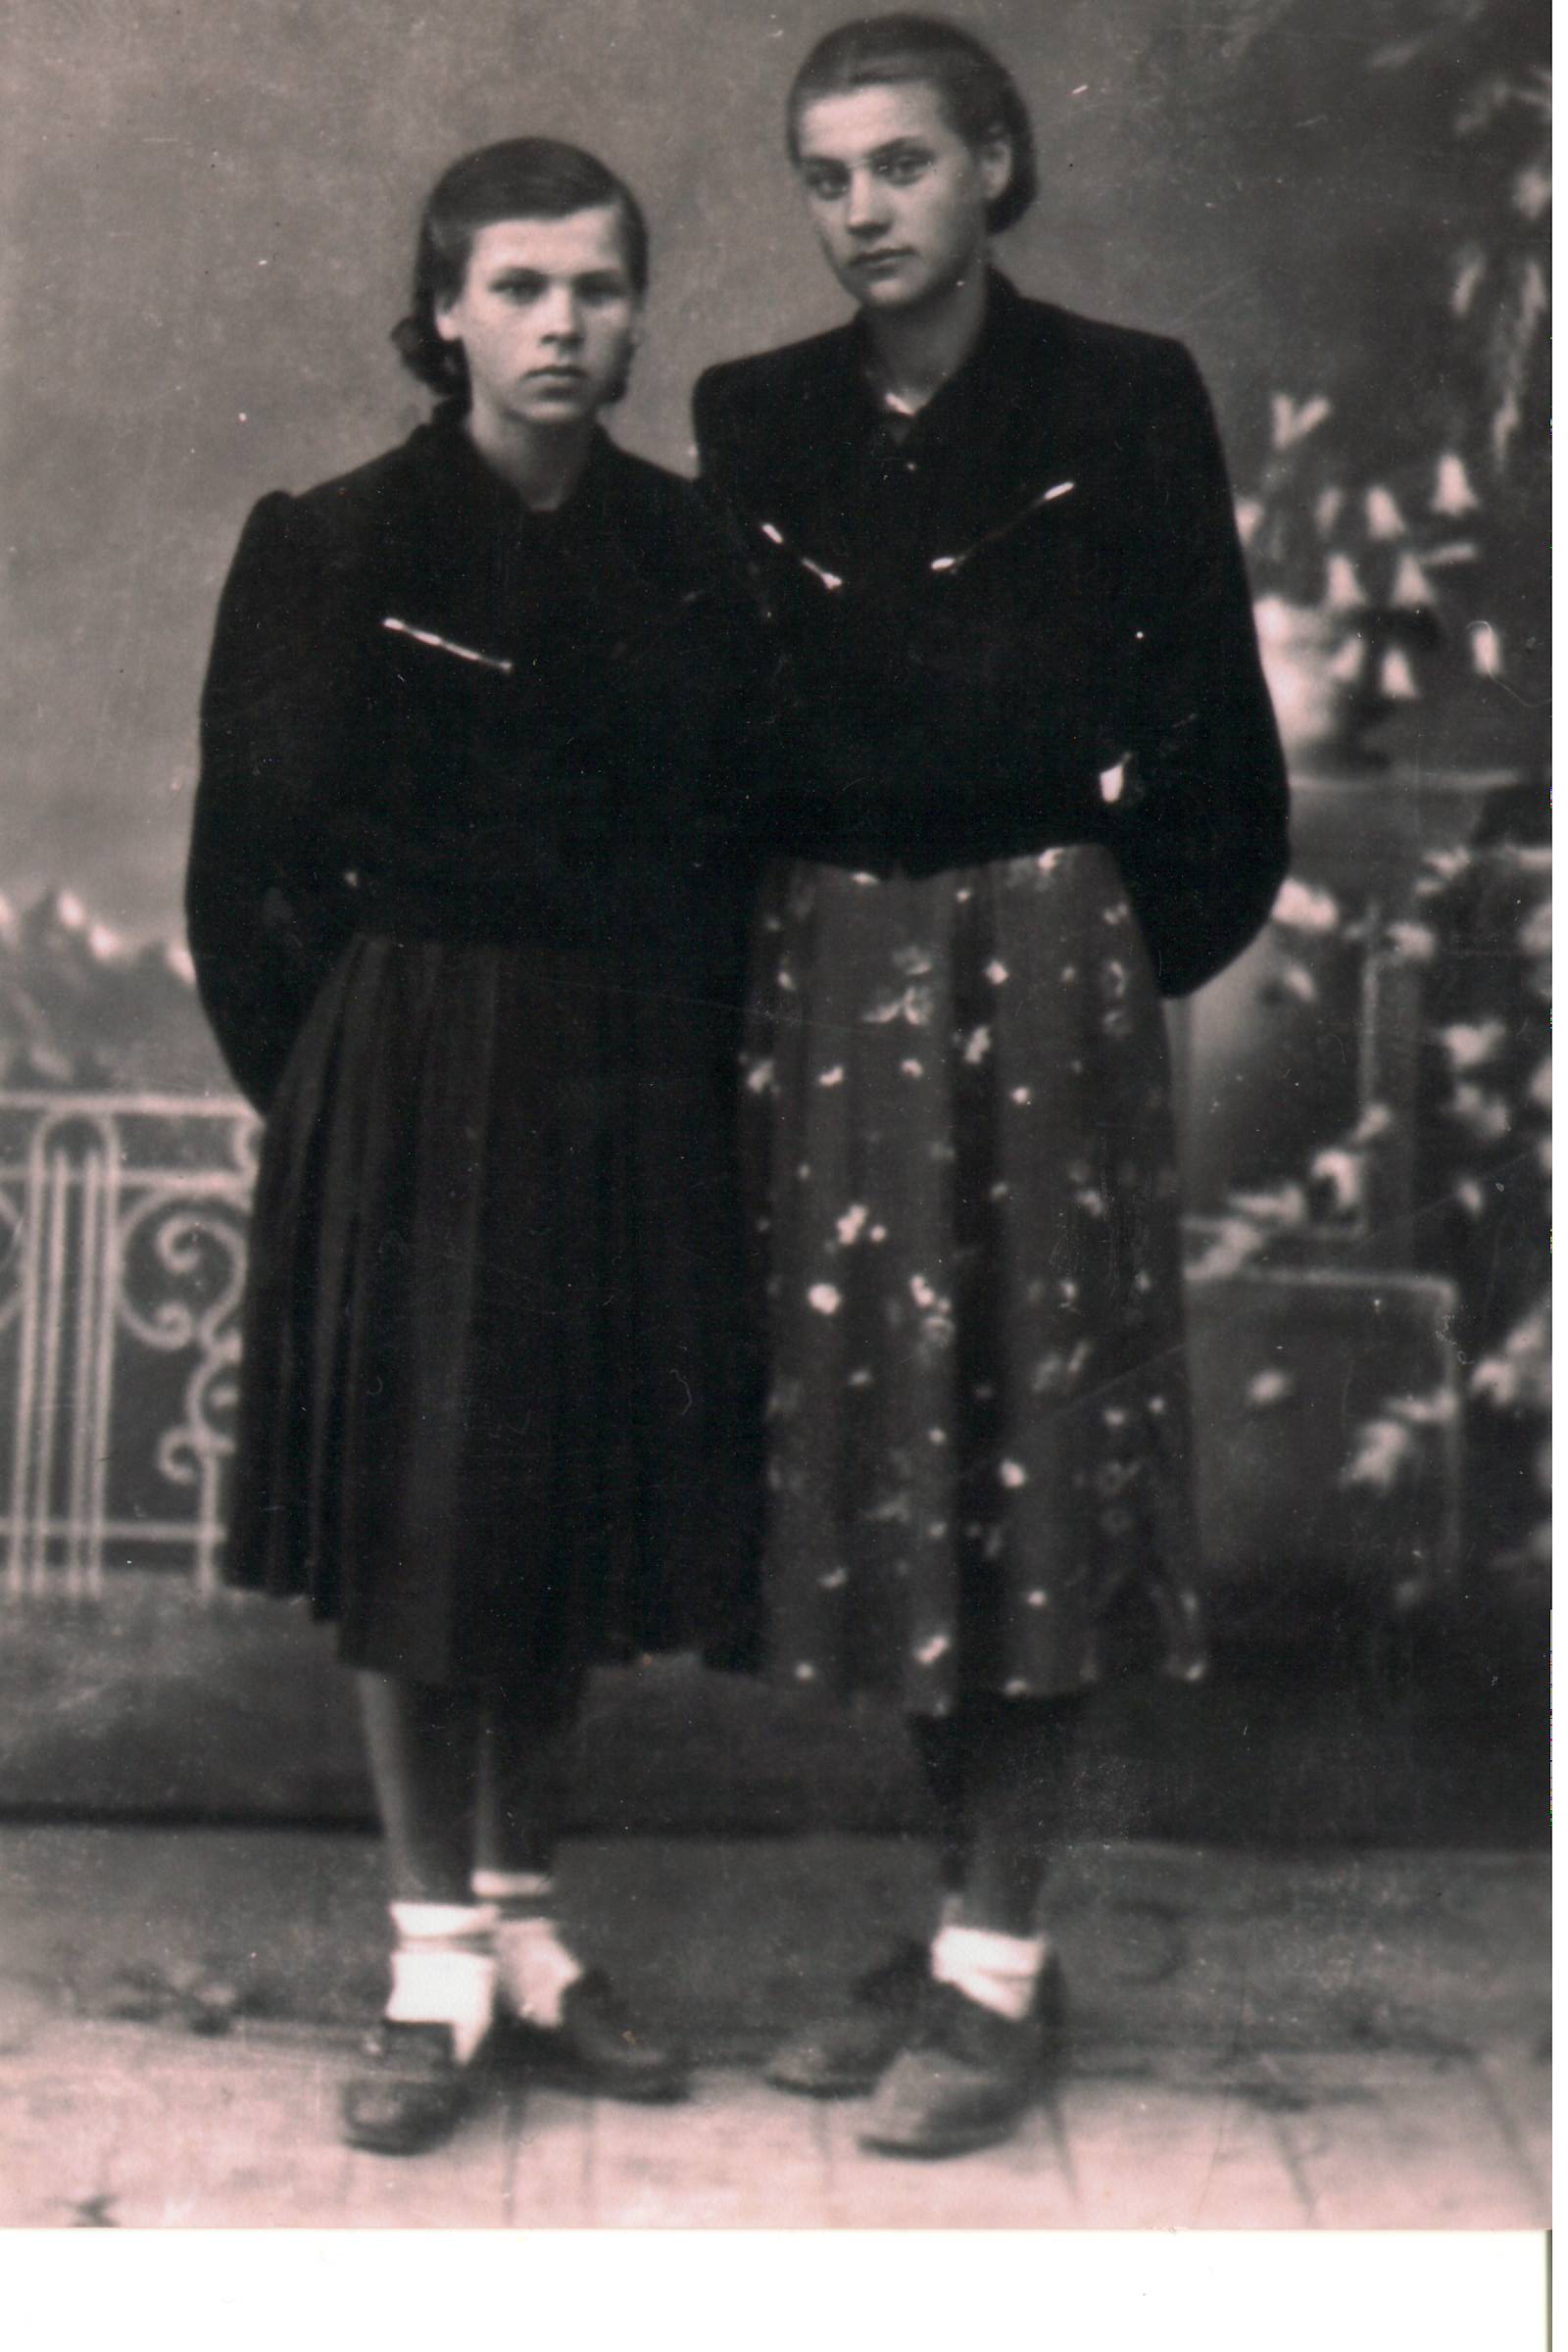 Autoriaus seserys Laimutė ir Onutė Špokevičiūtės Lietuvoje 1957 metais